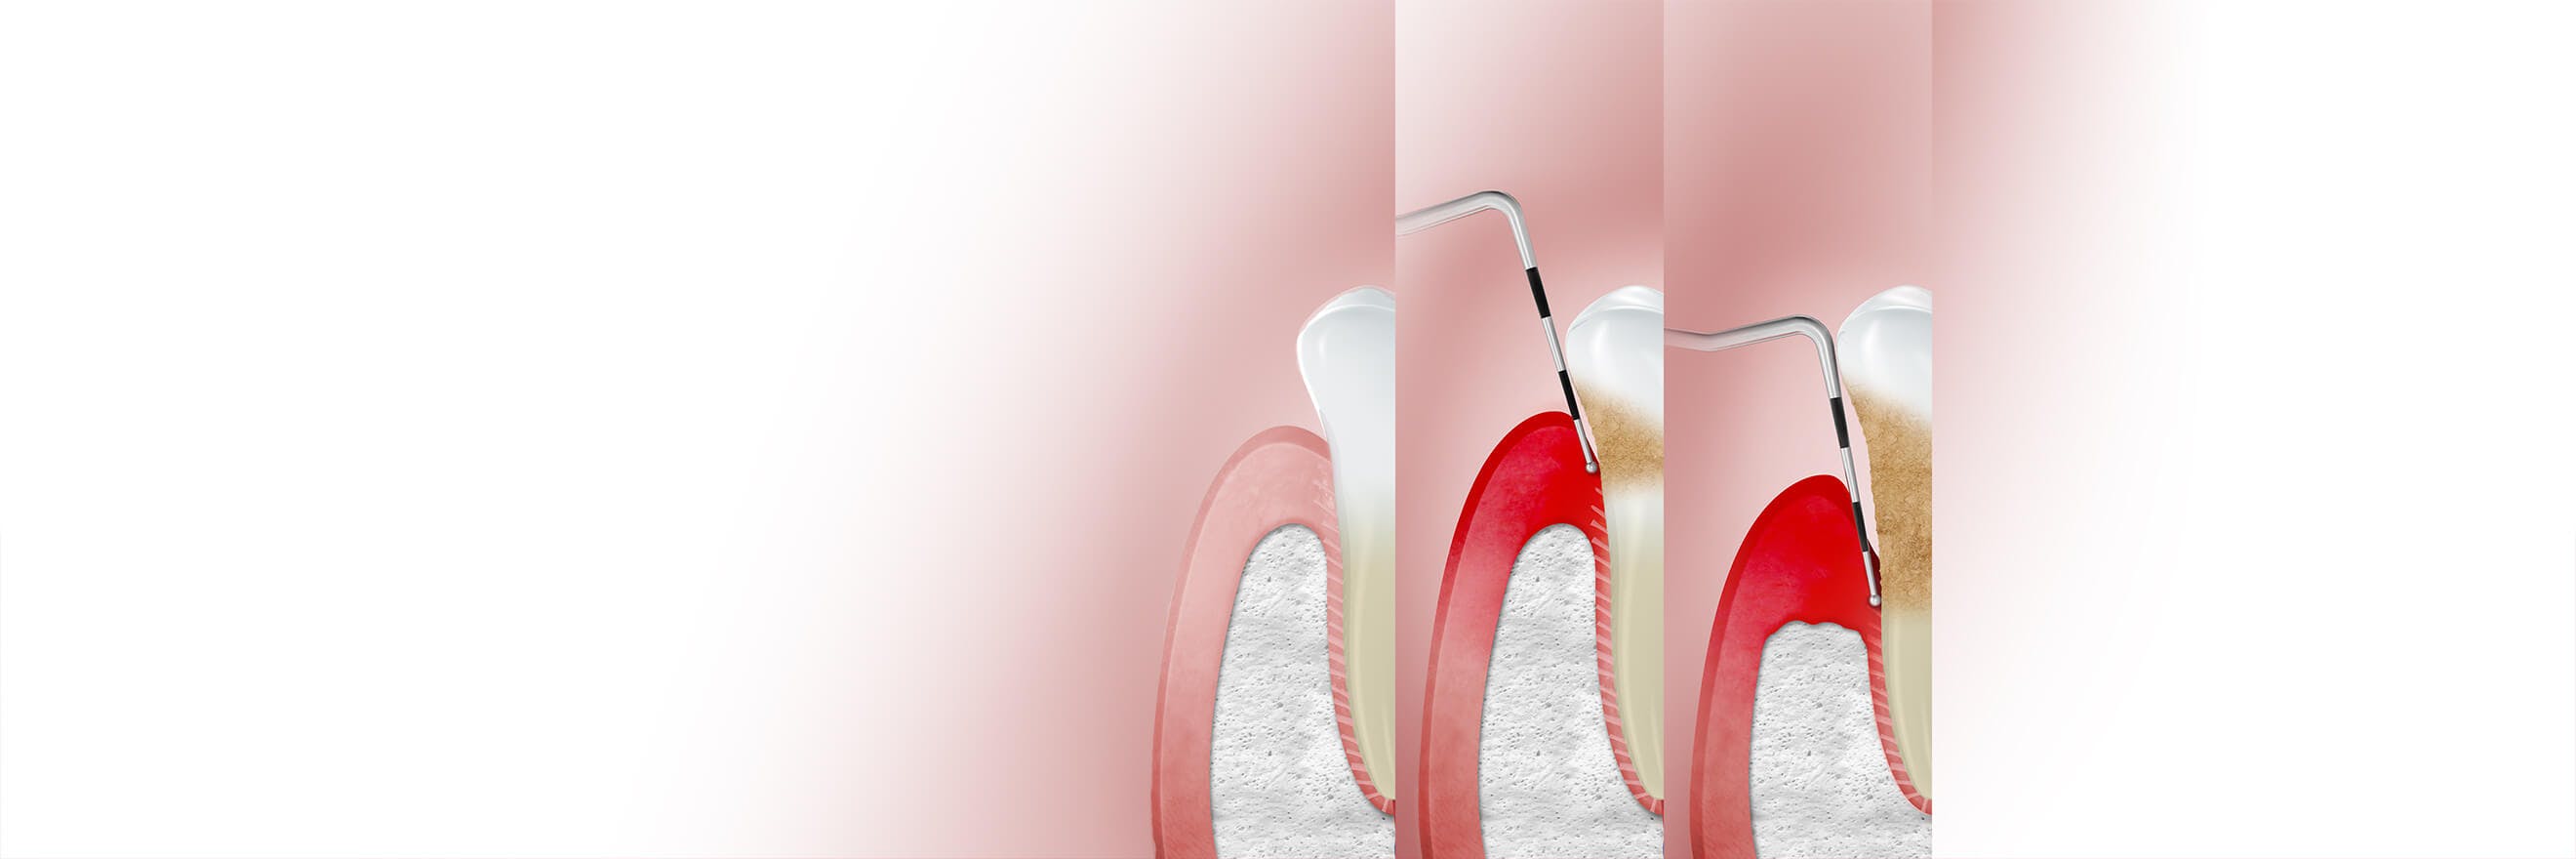 Ilustrace s nápisem "stádia" zobrazující různá stádia onemocnění dásní